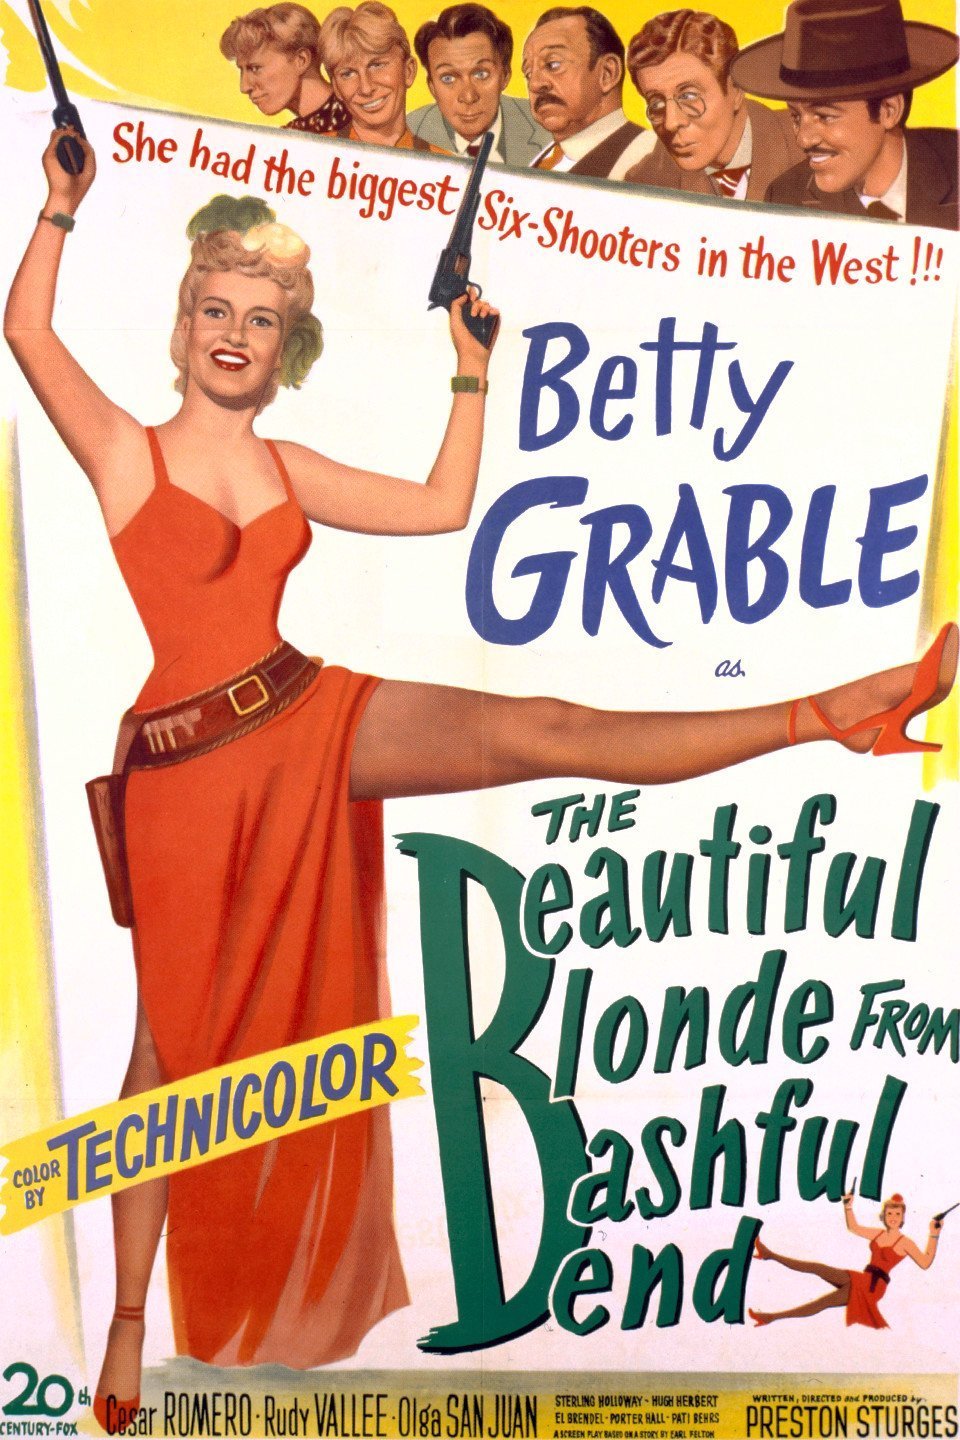 L'affiche du film The Beautiful Blonde from Bashful Bend